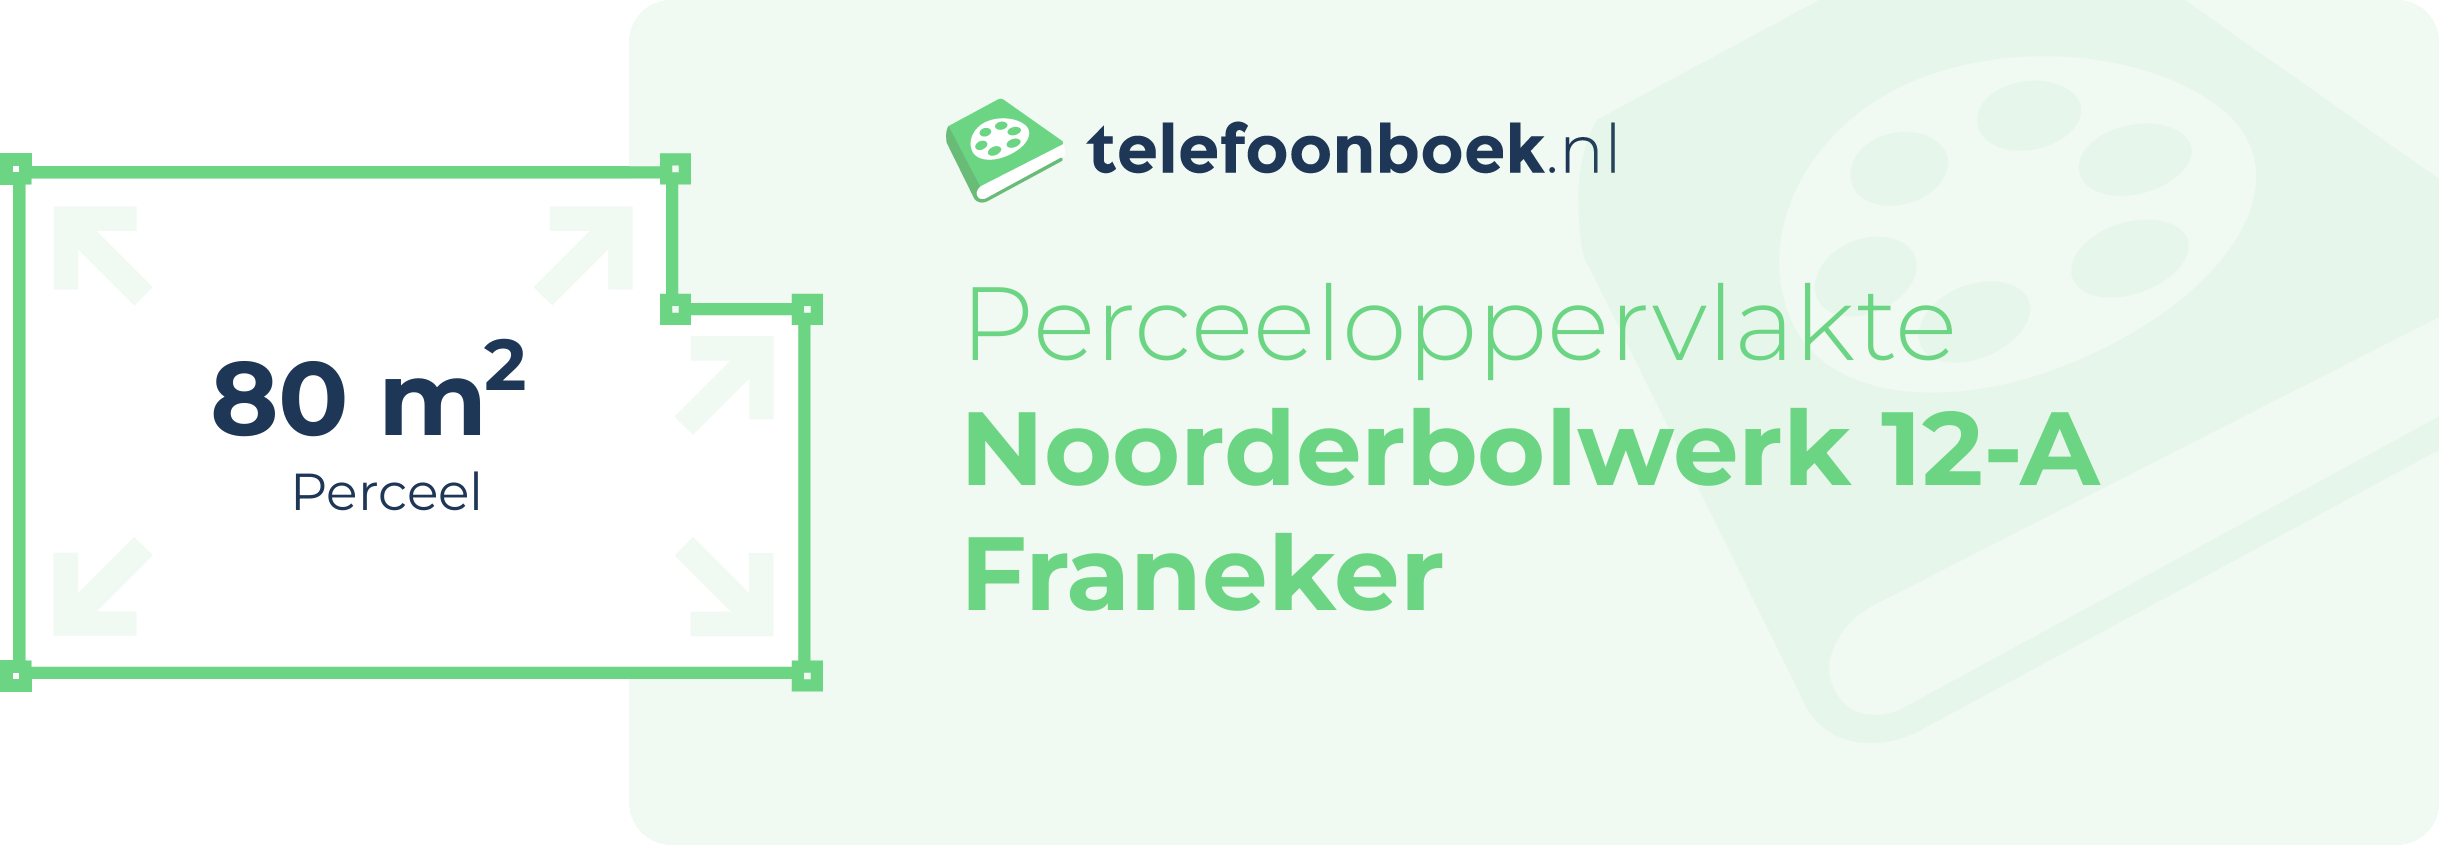 Perceeloppervlakte Noorderbolwerk 12-A Franeker